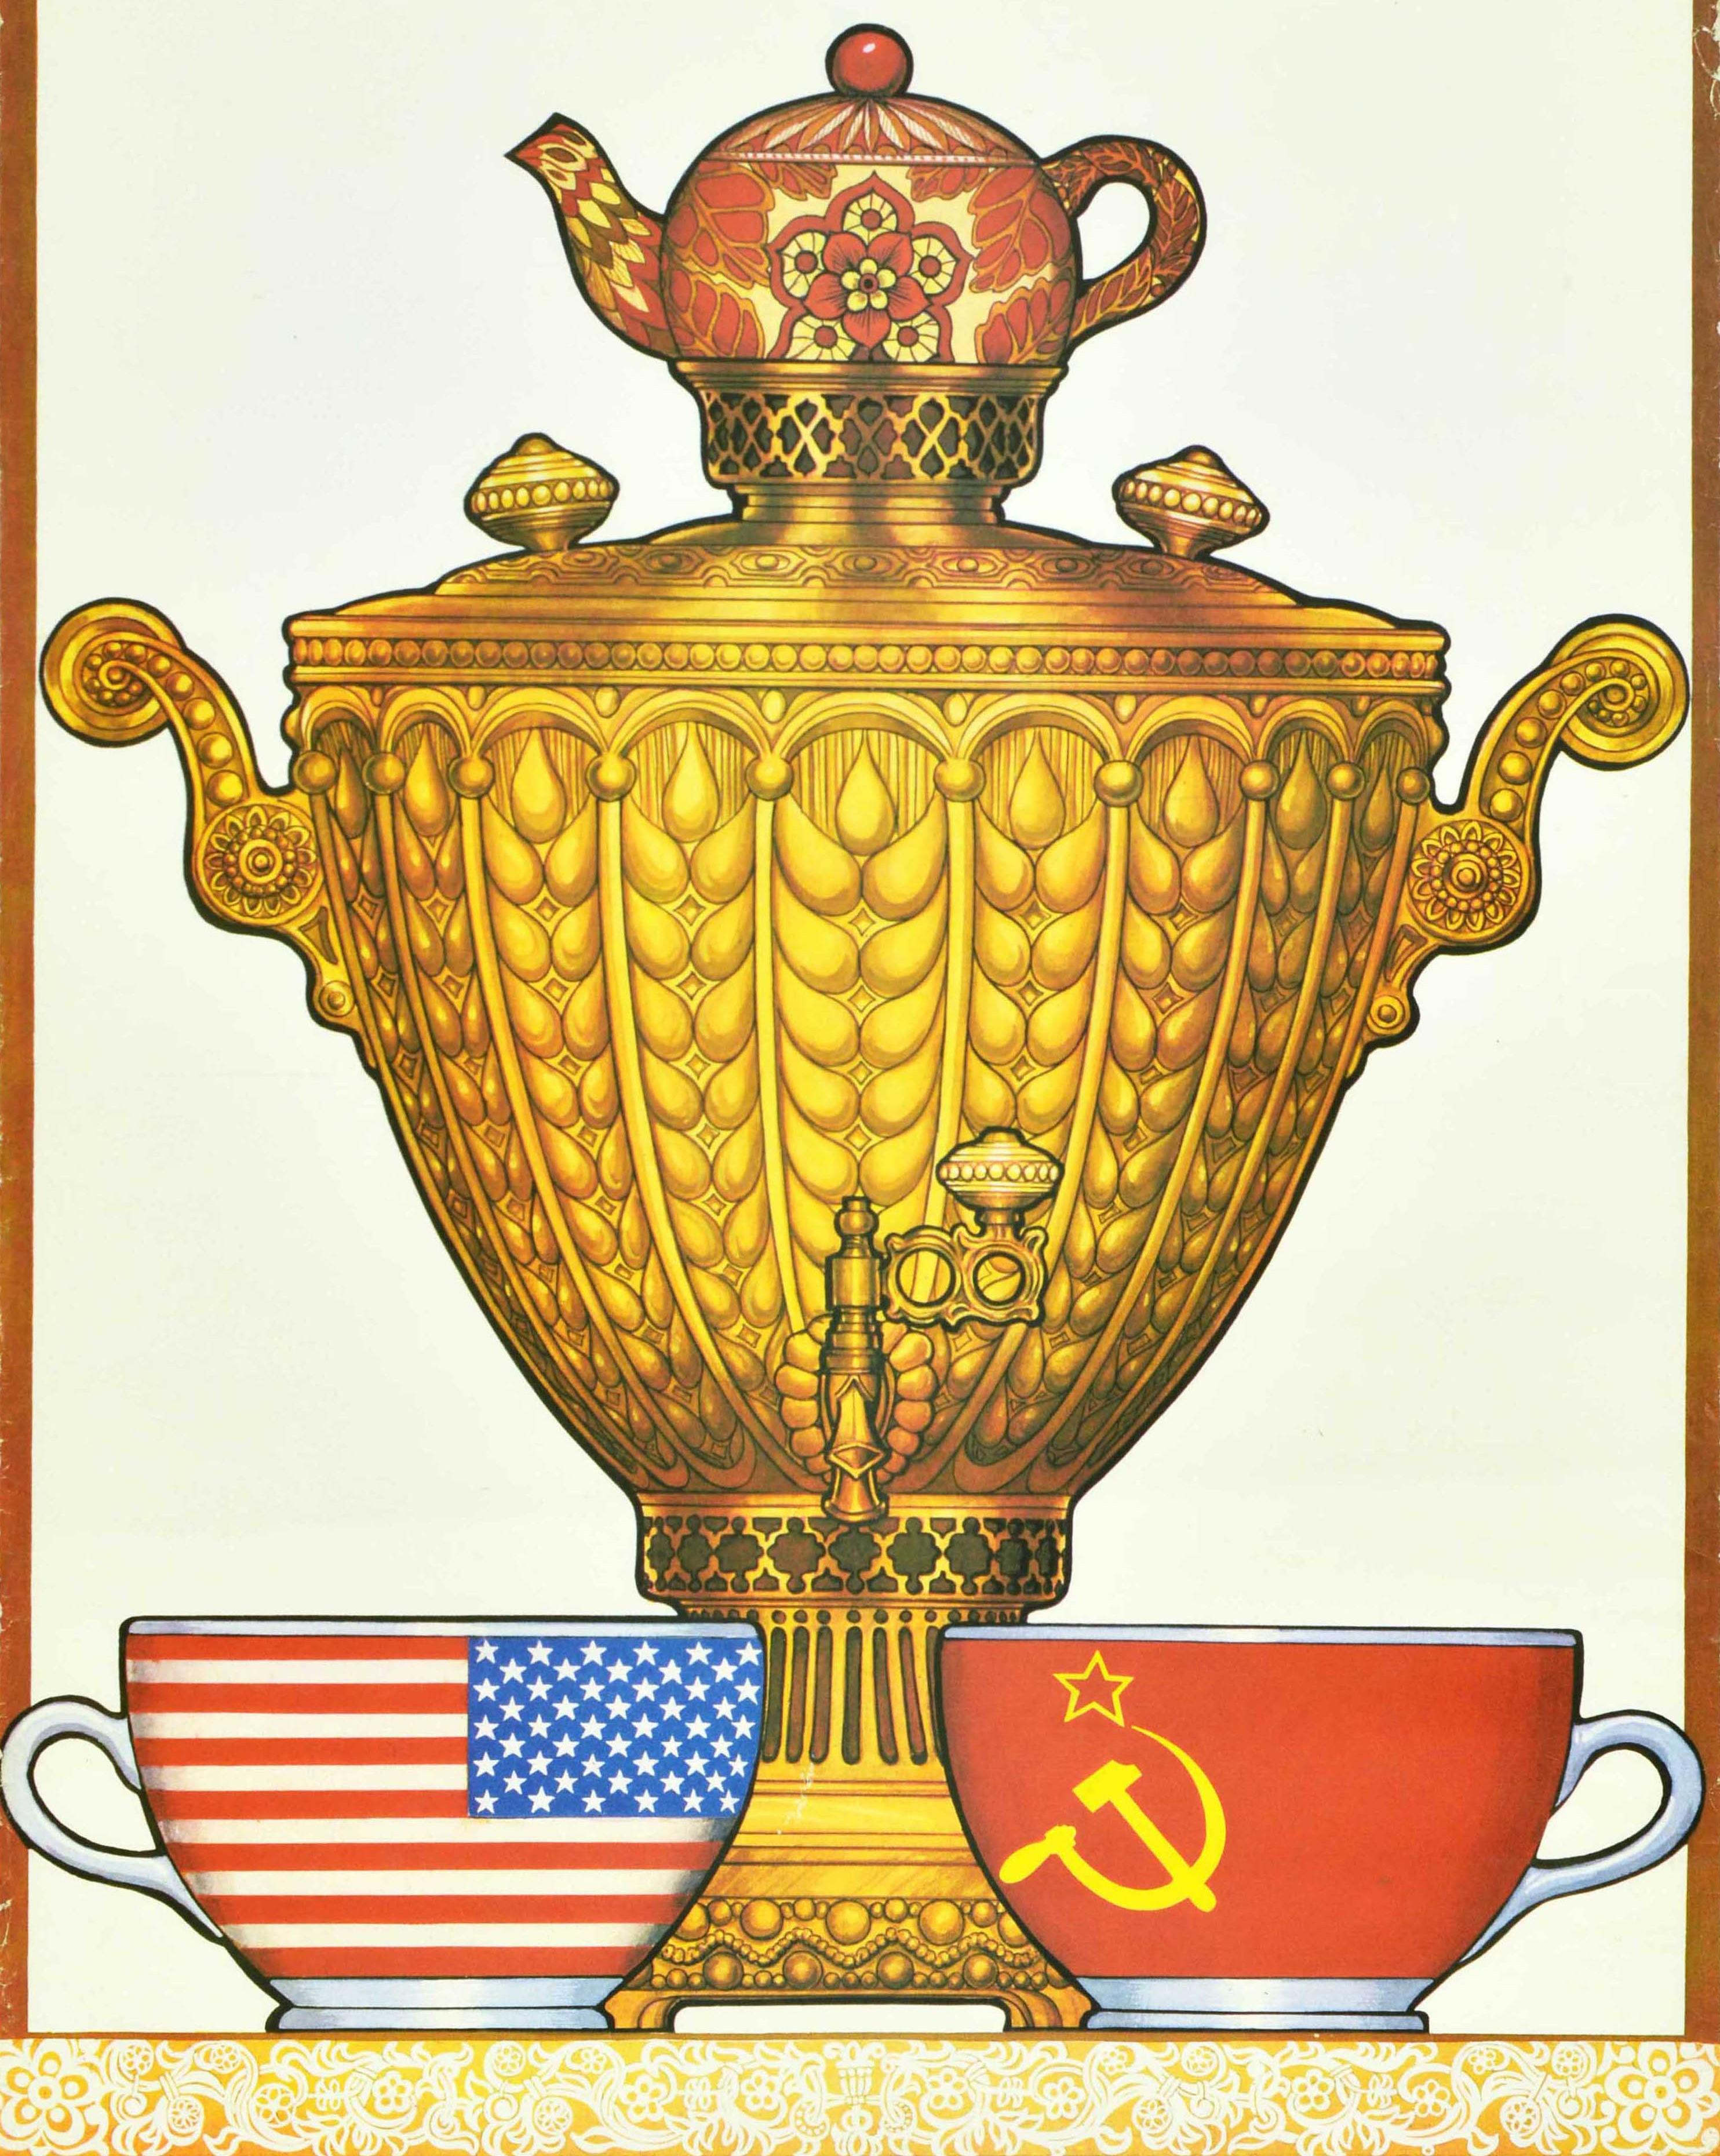 Affiche originale de propagande soviétique vintage de la guerre froide - Nous vivrons en paix ! - avec une illustration de style traditionnel représentant un samovar avec une théière à fleurs sur le dessus et deux tasses à thé sur la nappe en